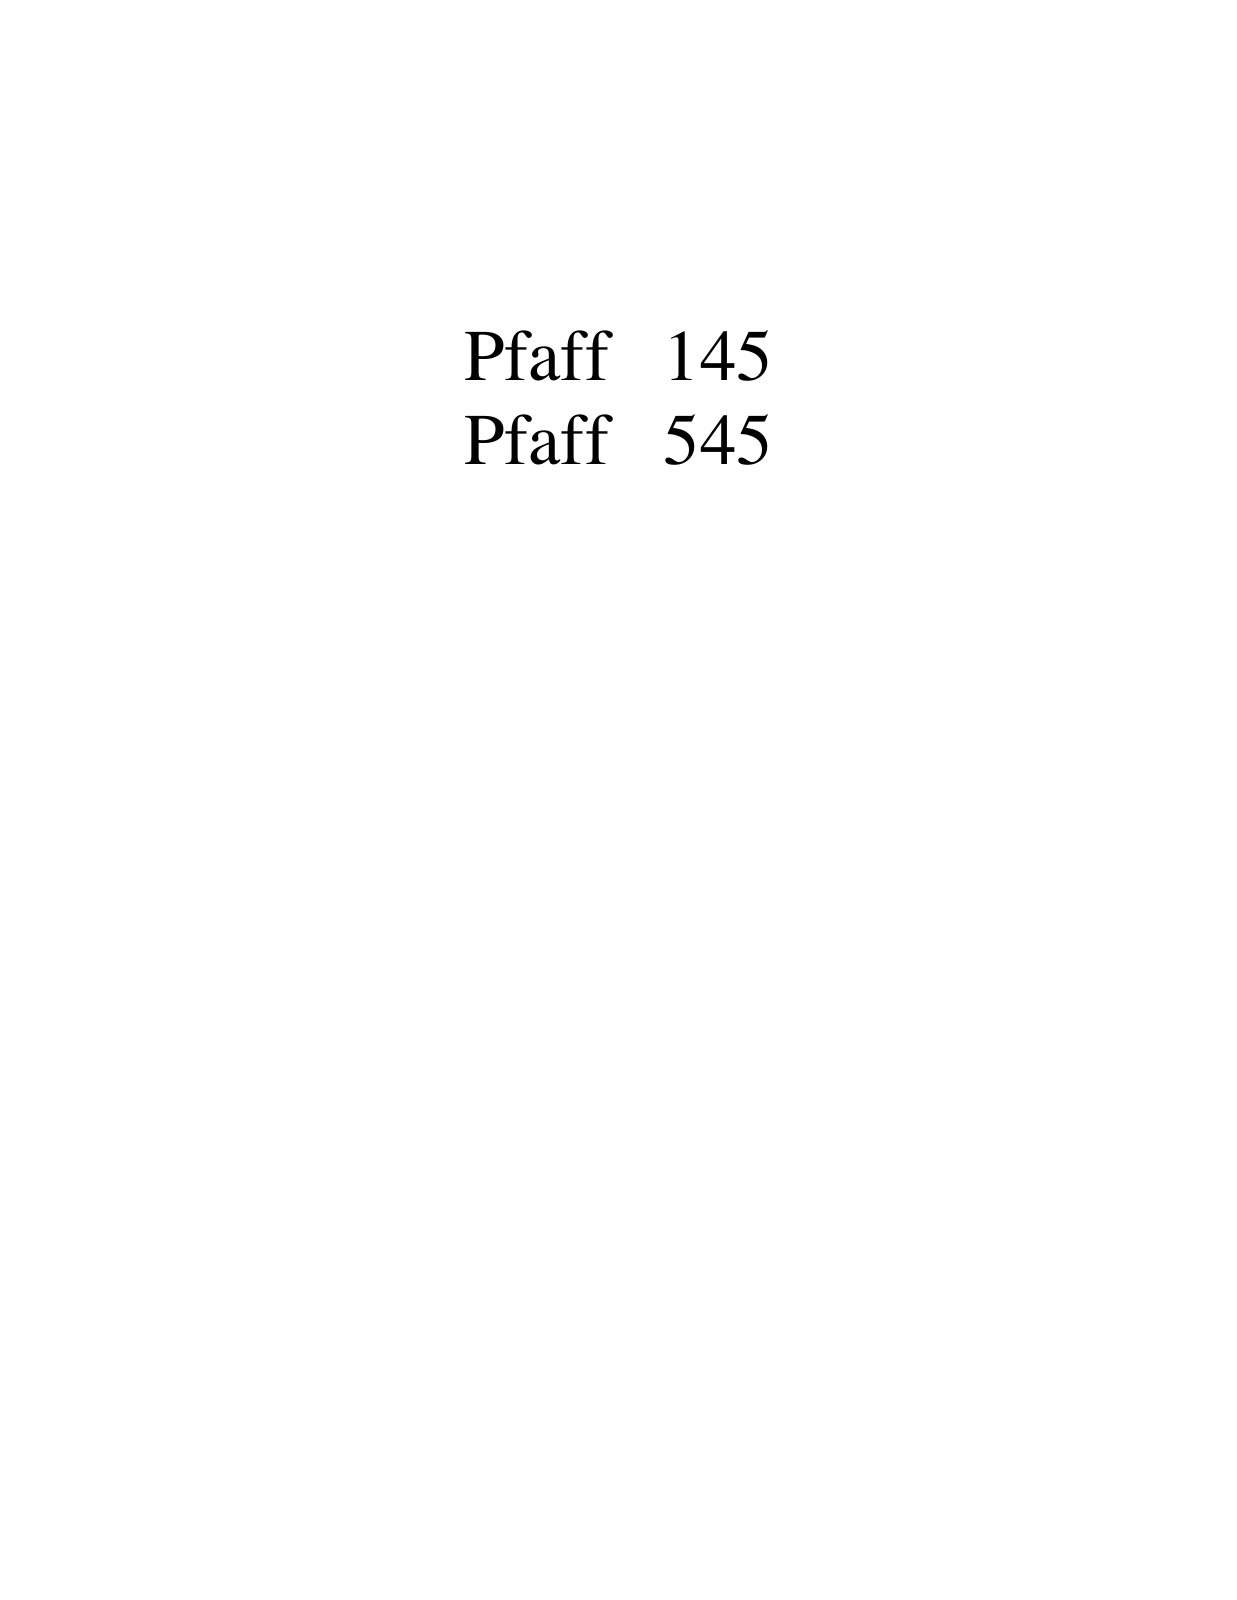 PFAFF 145, 545 Parts List